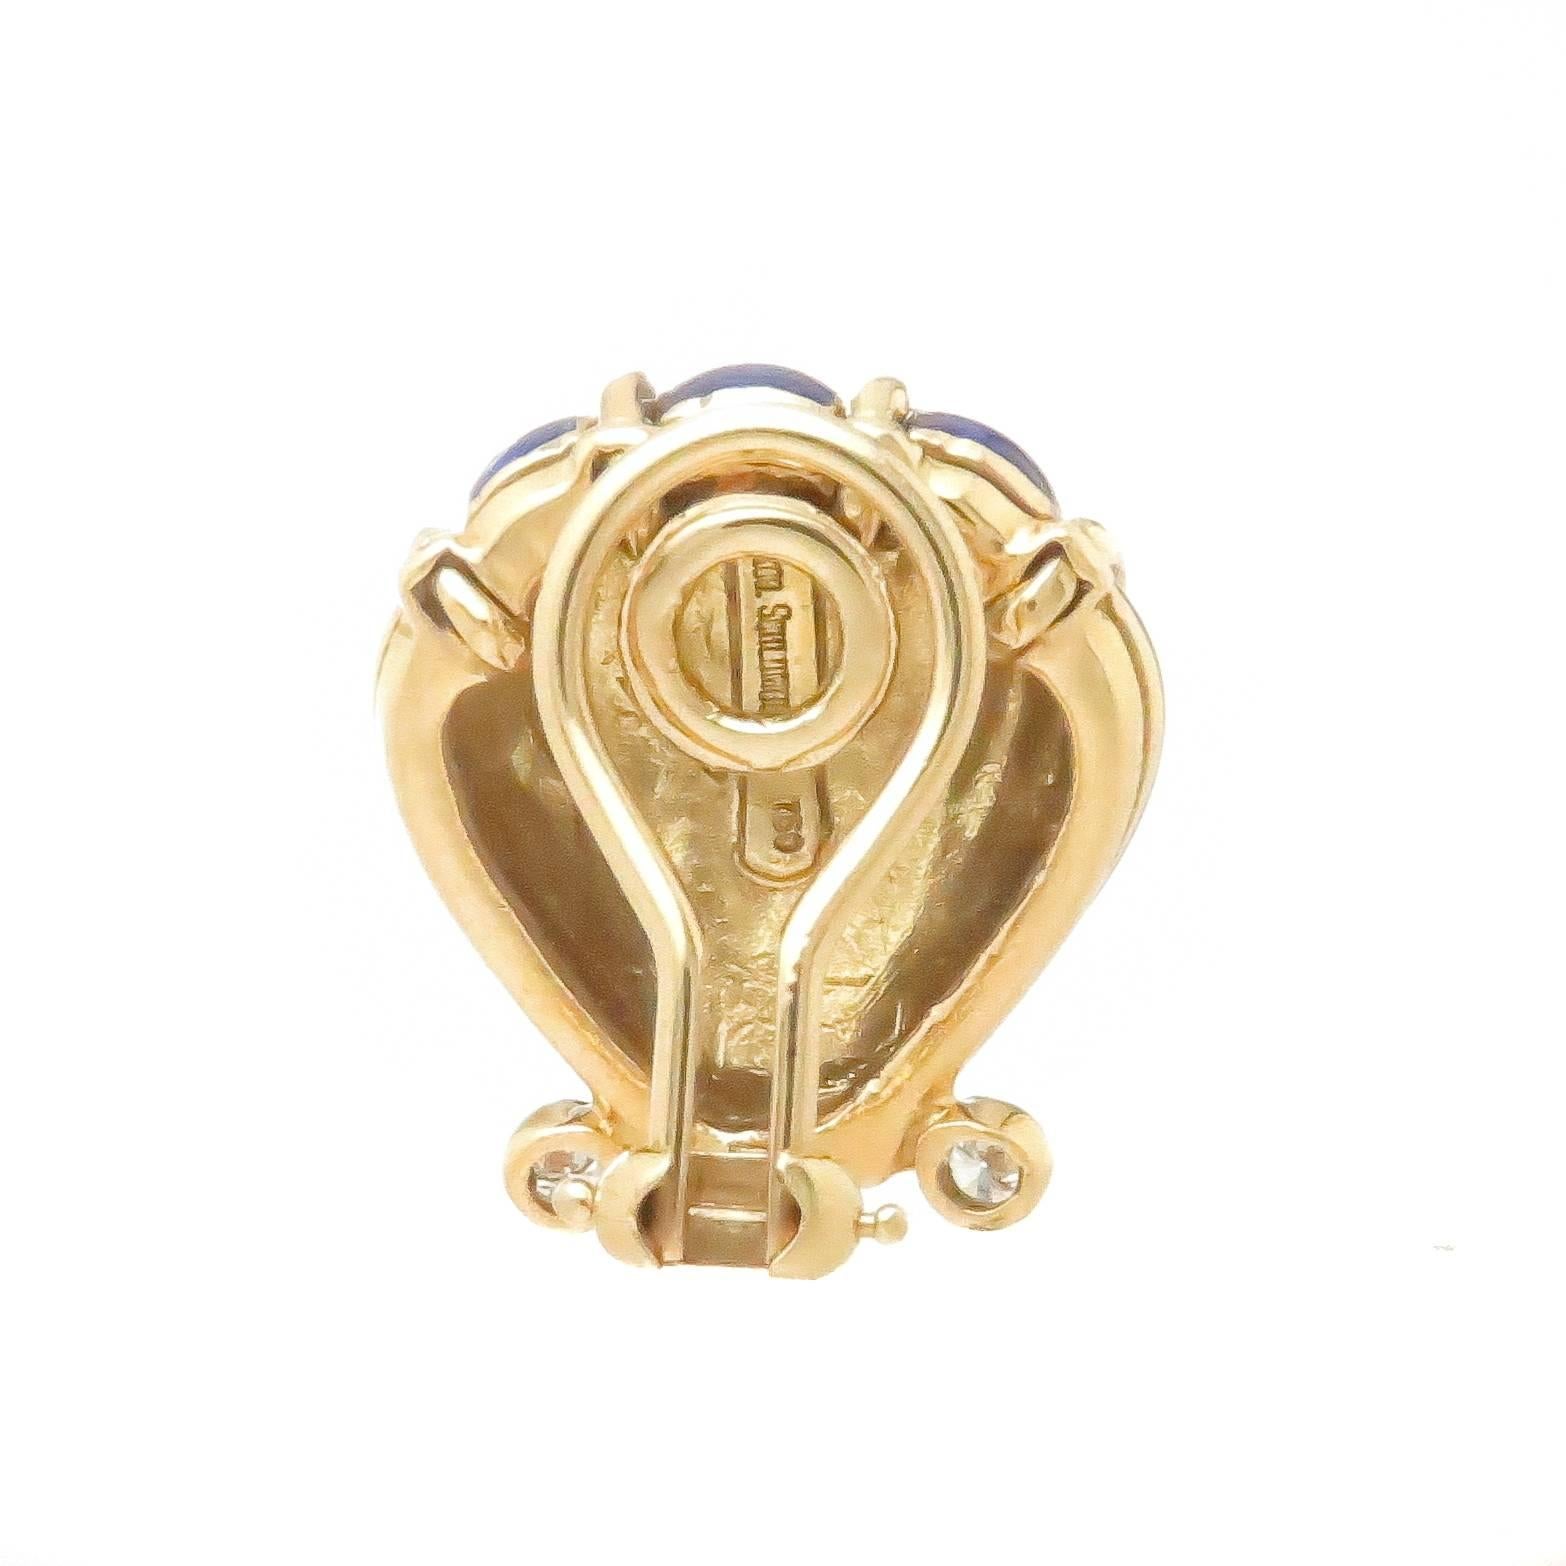 Um 2000 Jean Schlumberger für Tiffany & Company 18K Gelbgold Muschel Ohrringe, fertig in Kobaltblau Emaille und mit Diamanten besetzt insgesamt .15 Karat. Die Ohrringe messen 7/8 Zoll x 5/8 Zoll, Omega-Clip-Backs, zu denen ein Post leicht